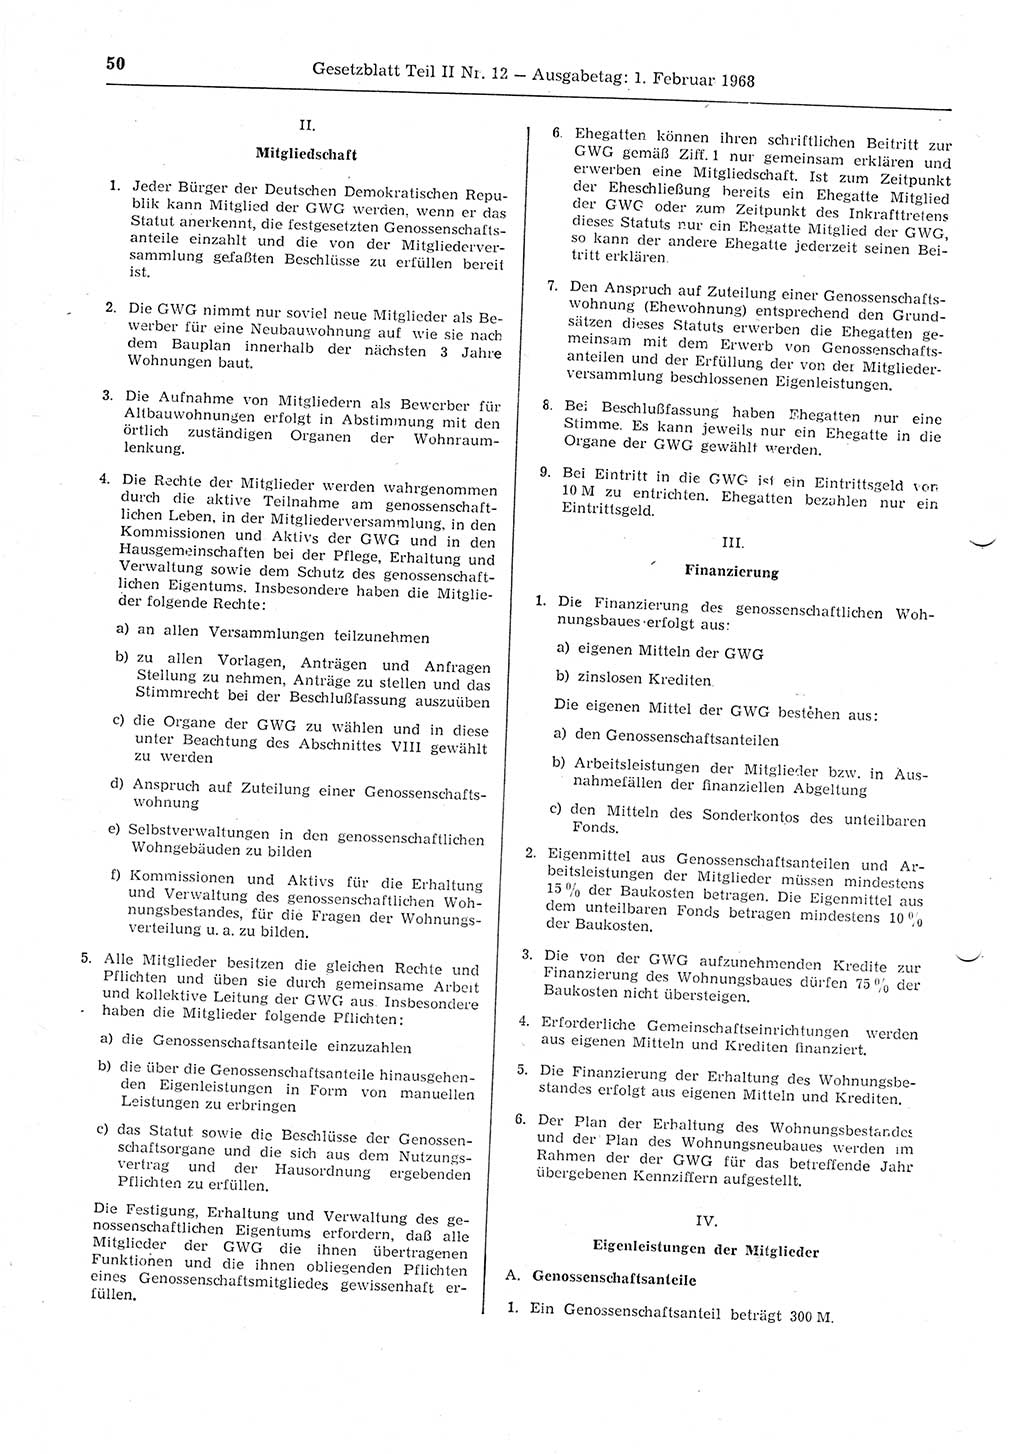 Gesetzblatt (GBl.) der Deutschen Demokratischen Republik (DDR) Teil ⅠⅠ 1968, Seite 50 (GBl. DDR ⅠⅠ 1968, S. 50)